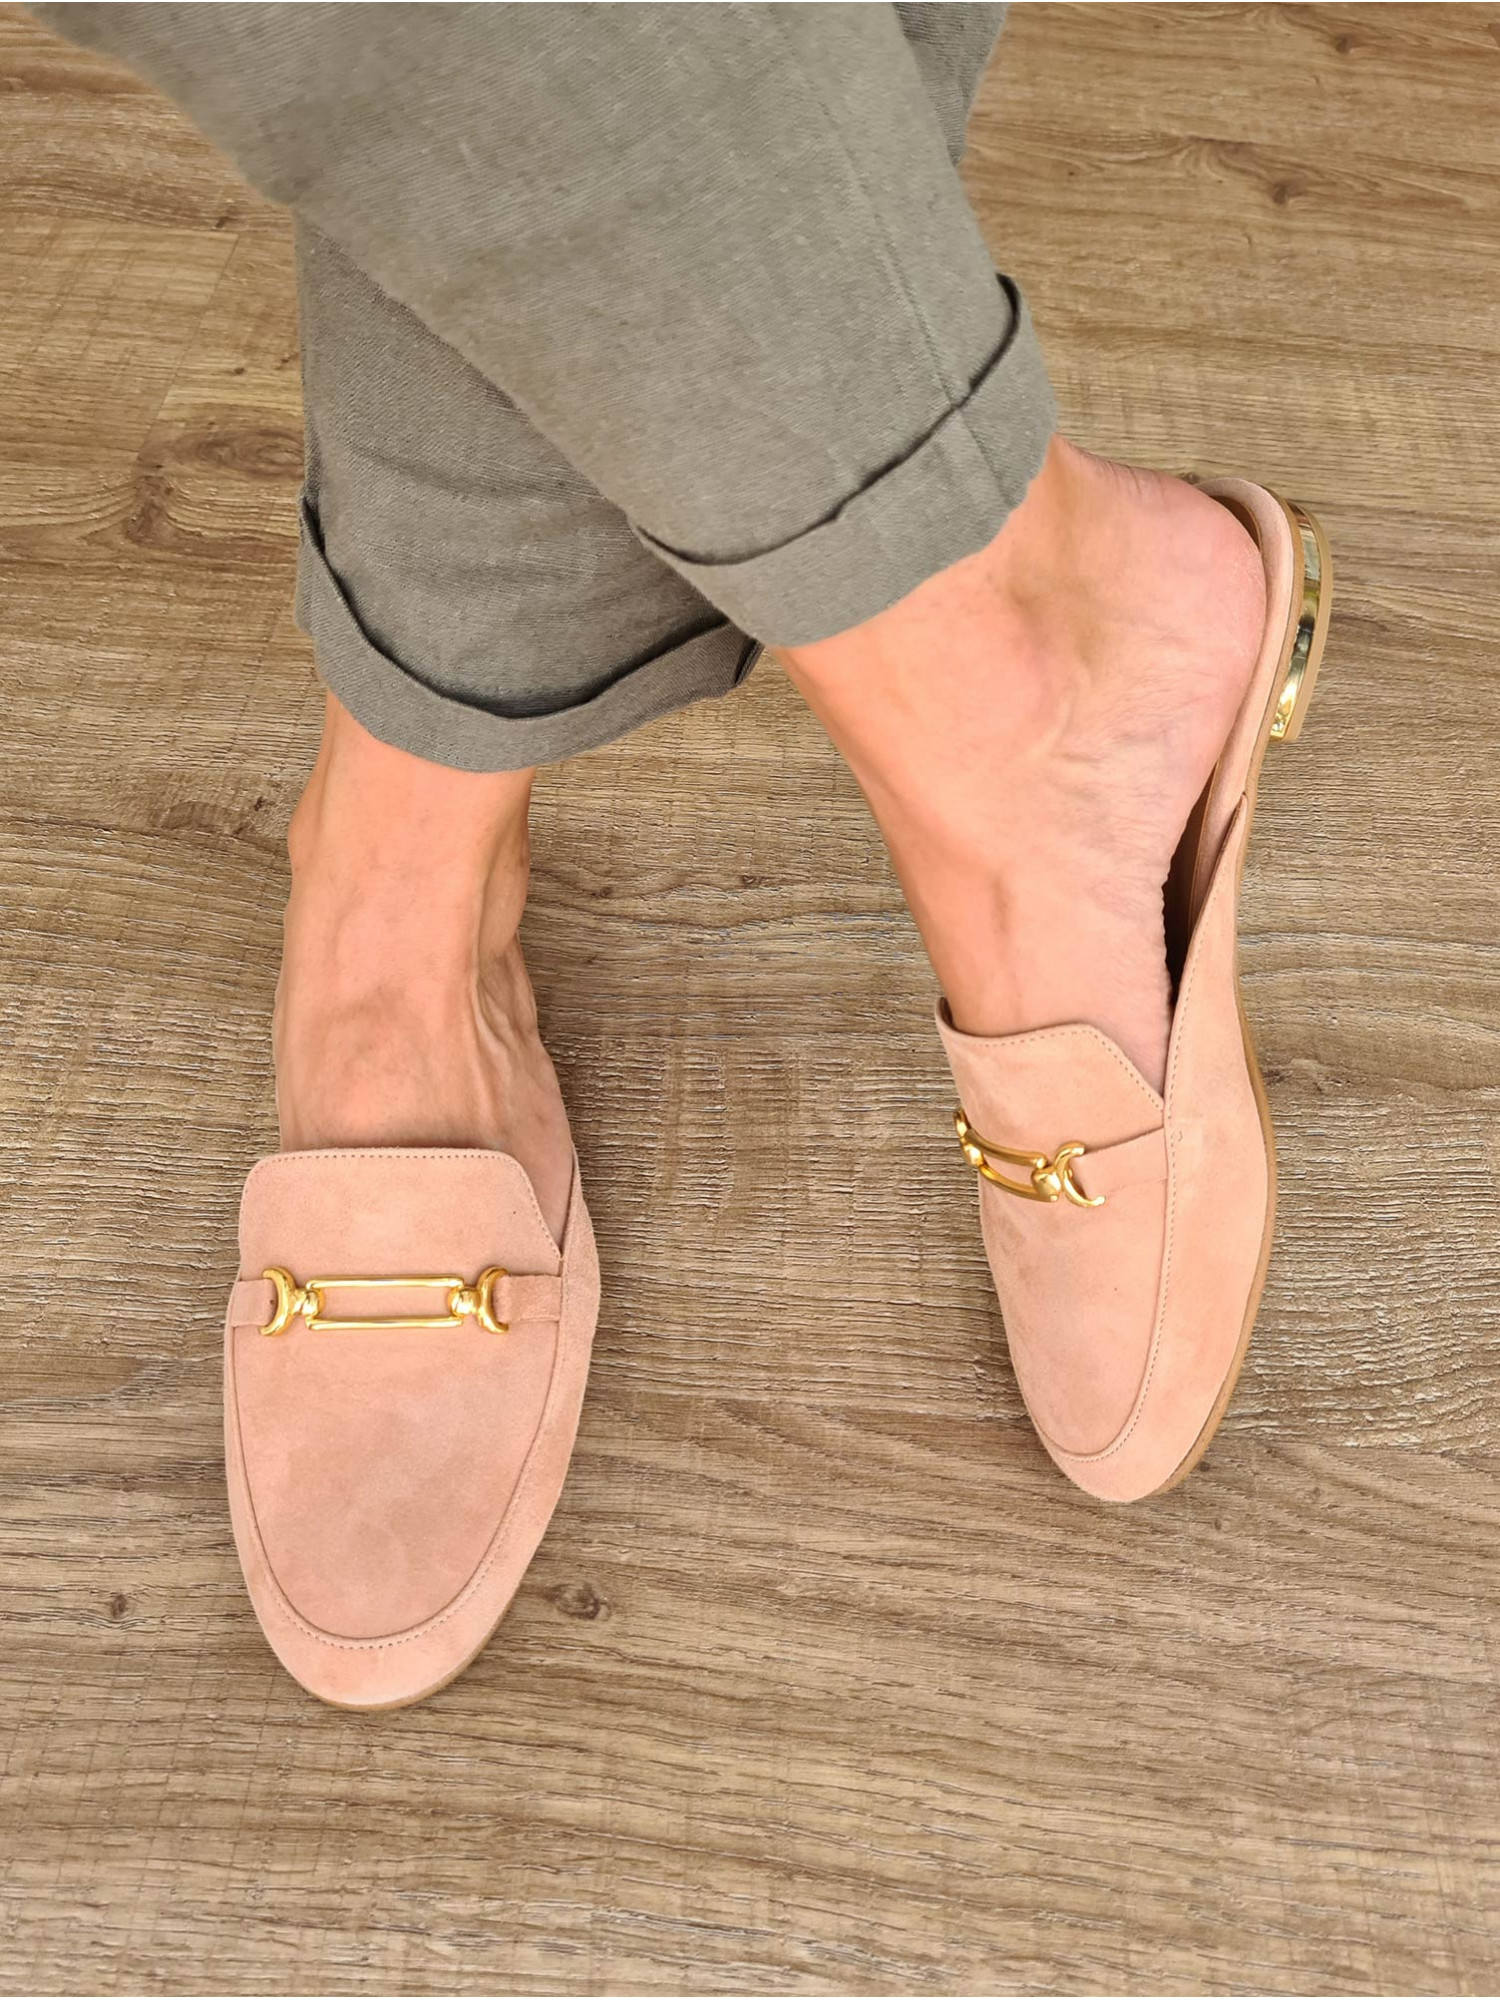 Zapato mocasín plano destalonado. Fabricado en España en piel de ante color nude y detalle de cadena dorada.